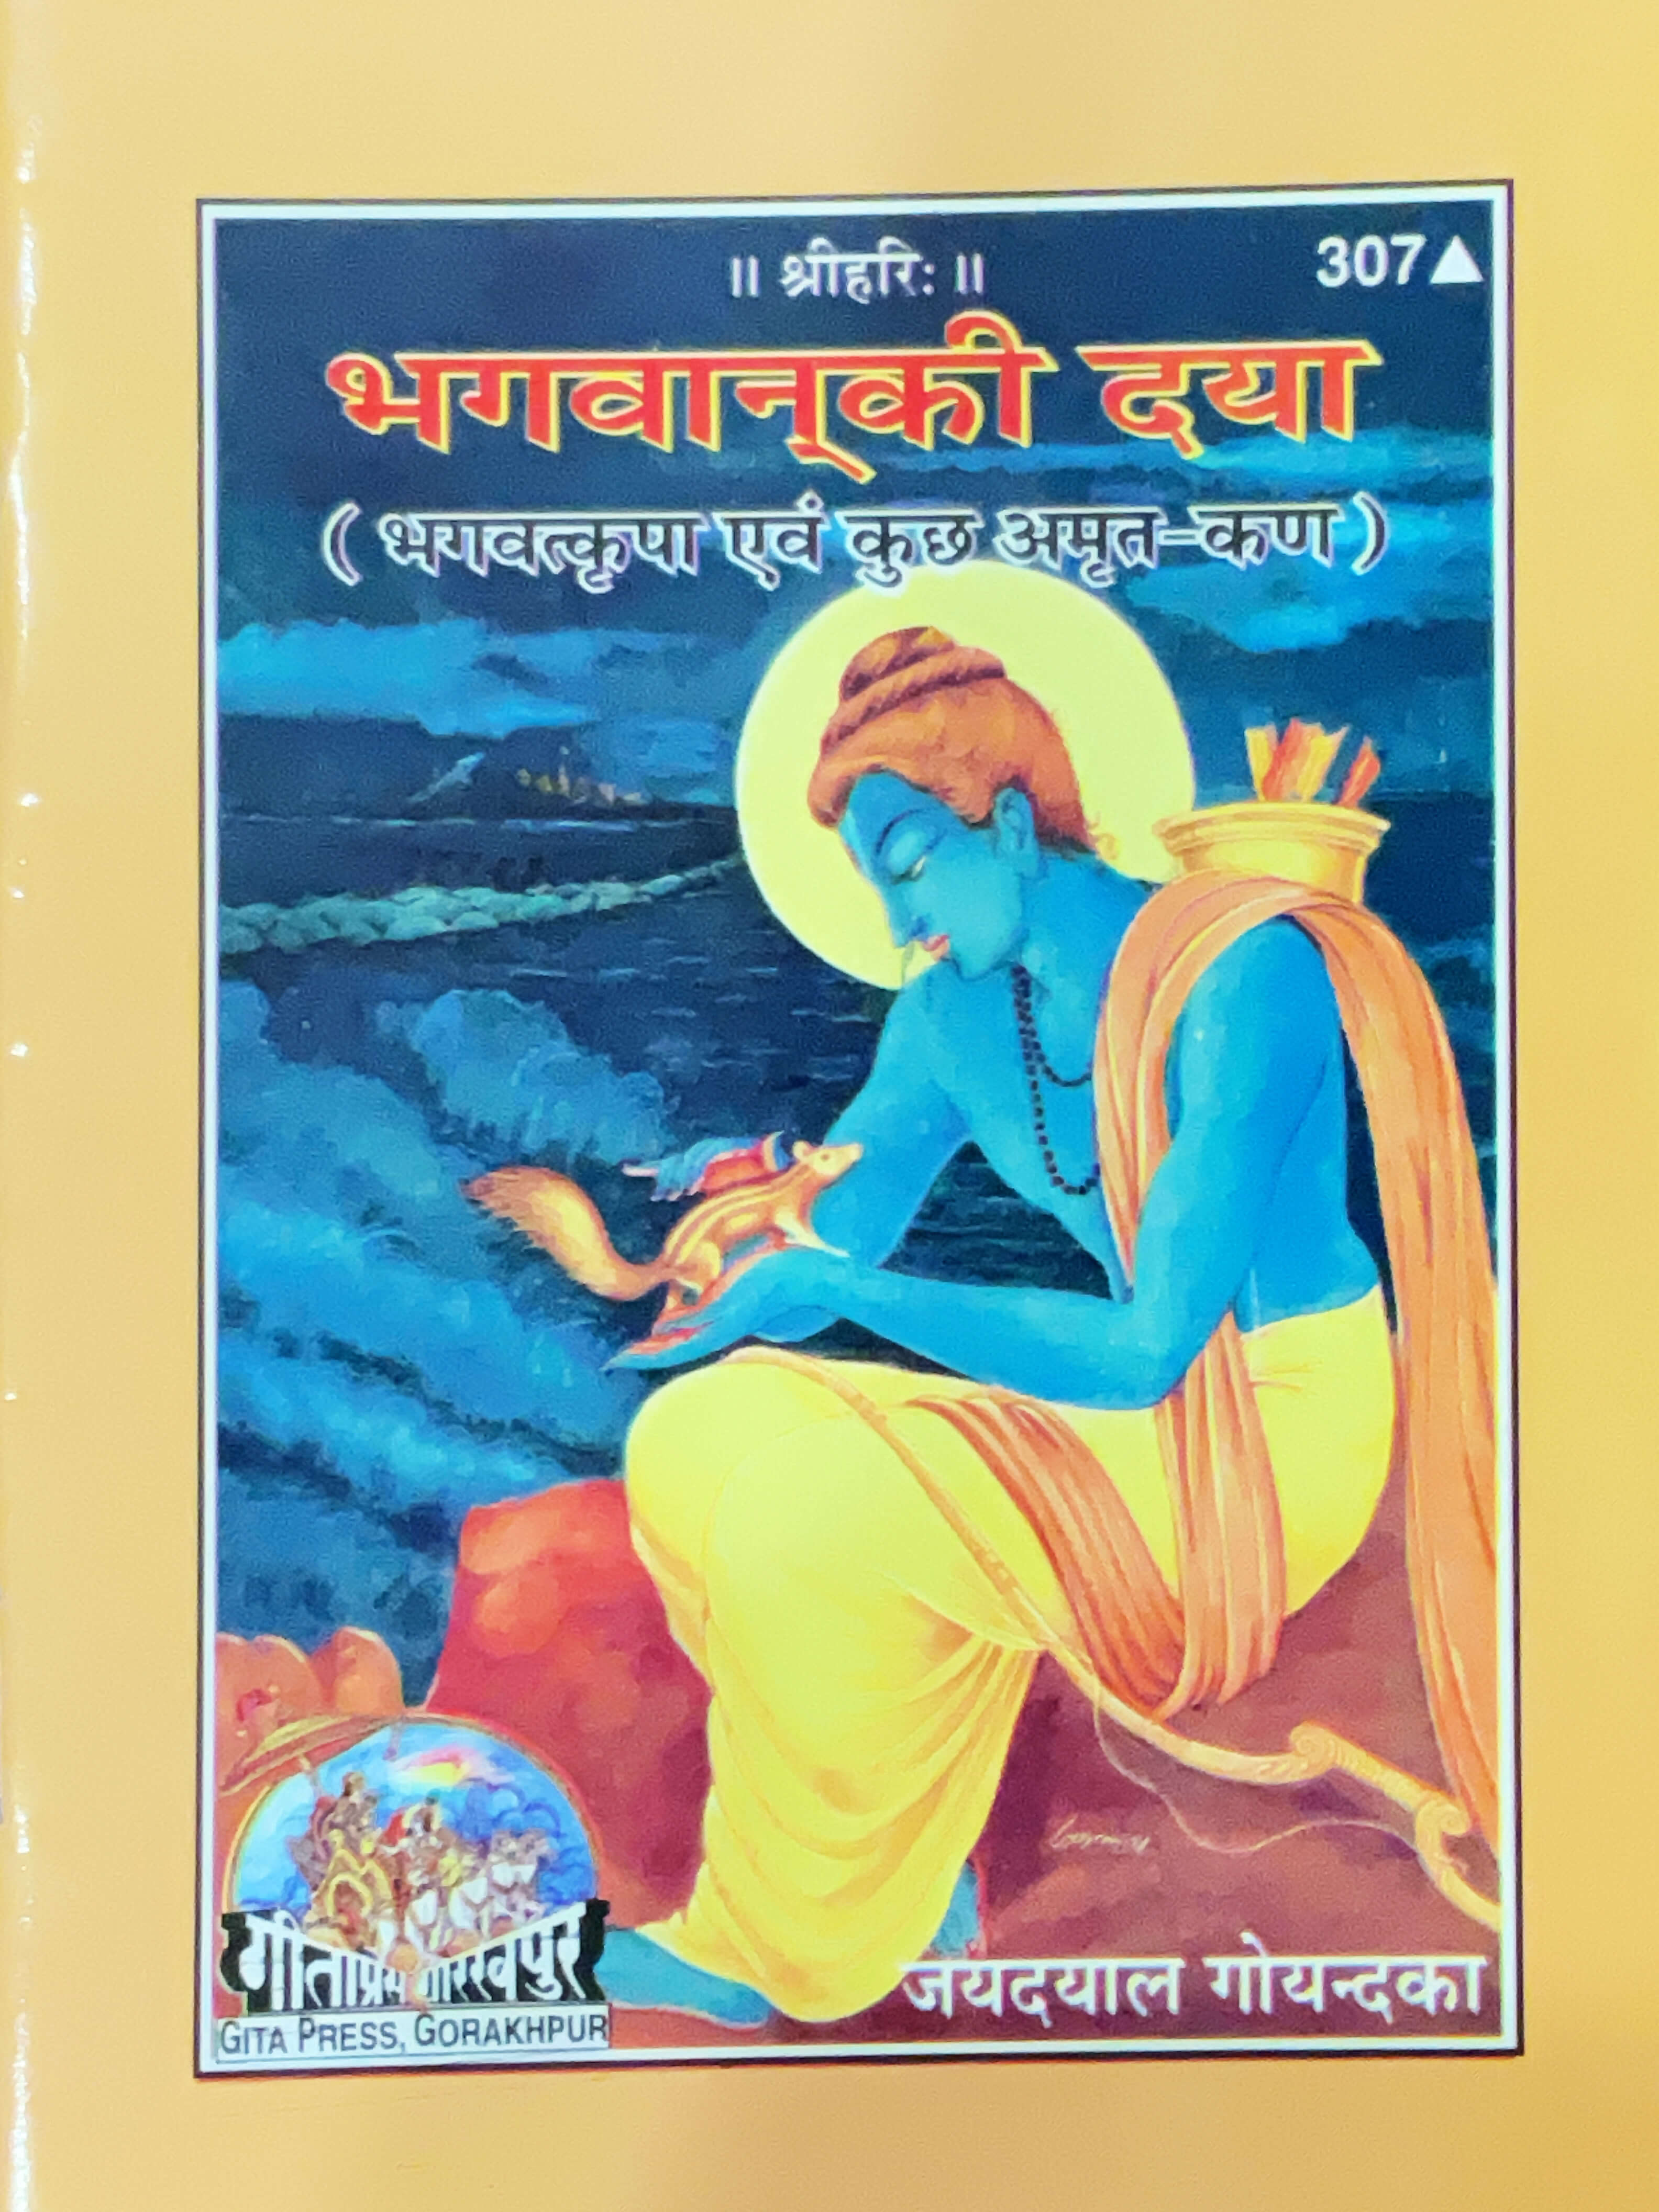 SANATAN  Bhagwan ki Daya by Gita Press